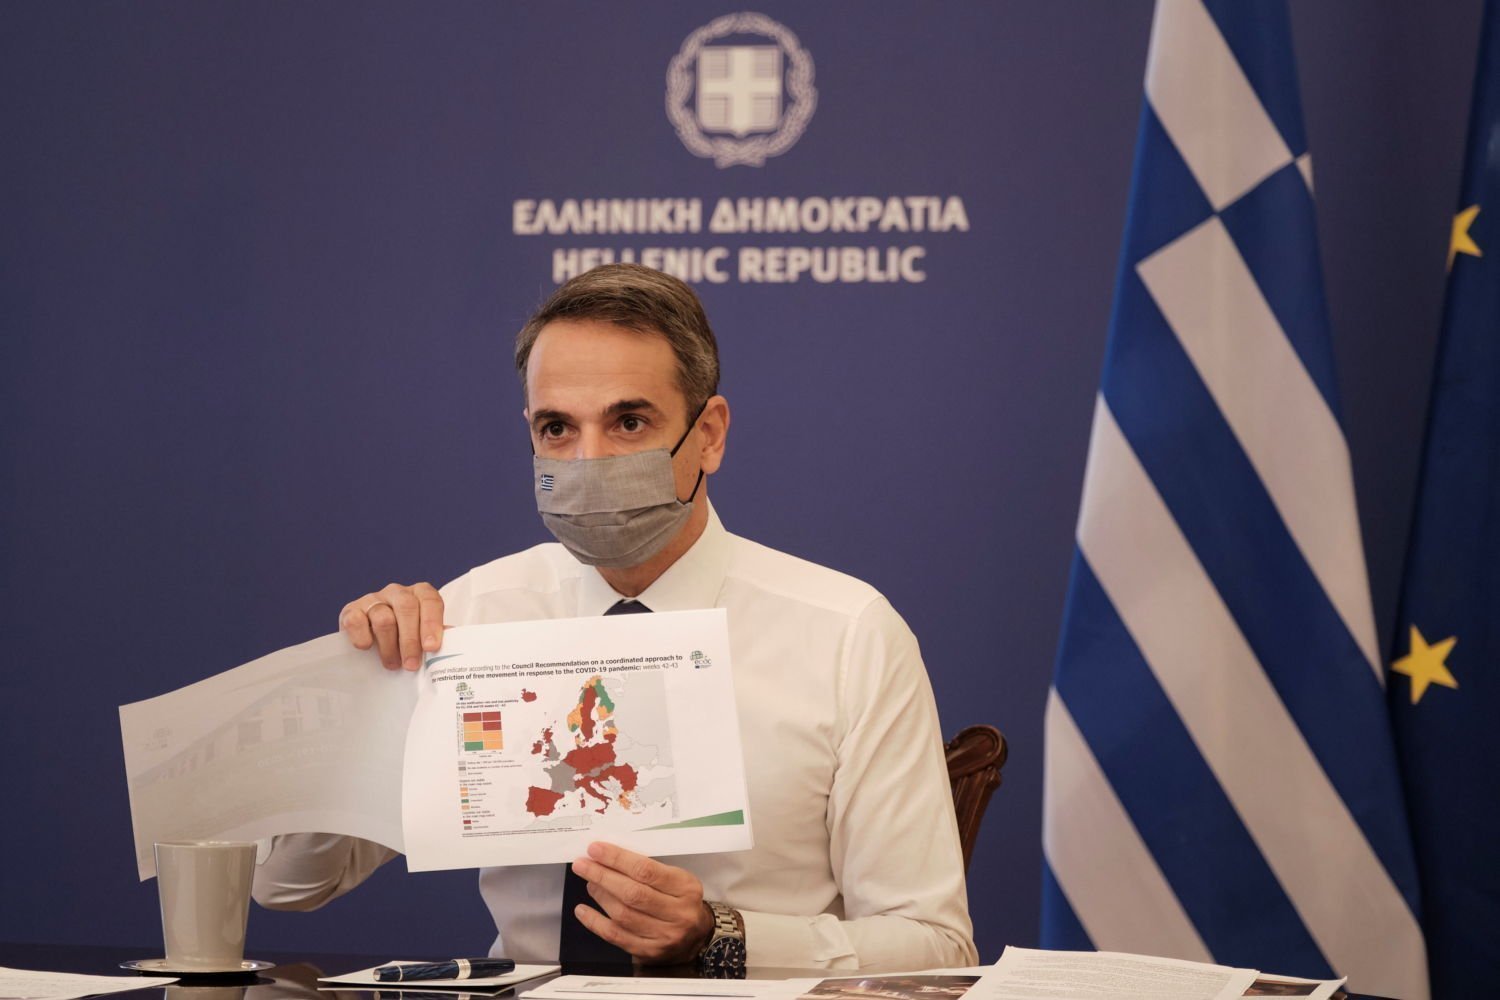 Η Ελλάδα επιβάλλει αυστηρότερο κλείδωμα για μια εβδομάδα, απαγόρευση της ώρας 9 ωρών, καταστήματα κοντά